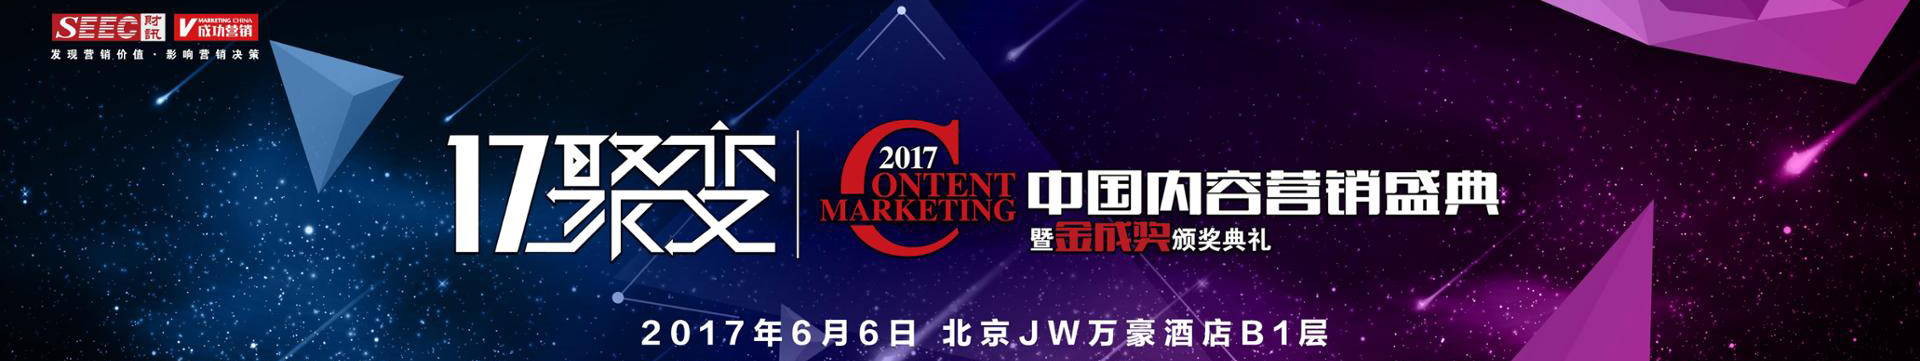 2017中国内容营销盛典暨金成奖颁奖典礼